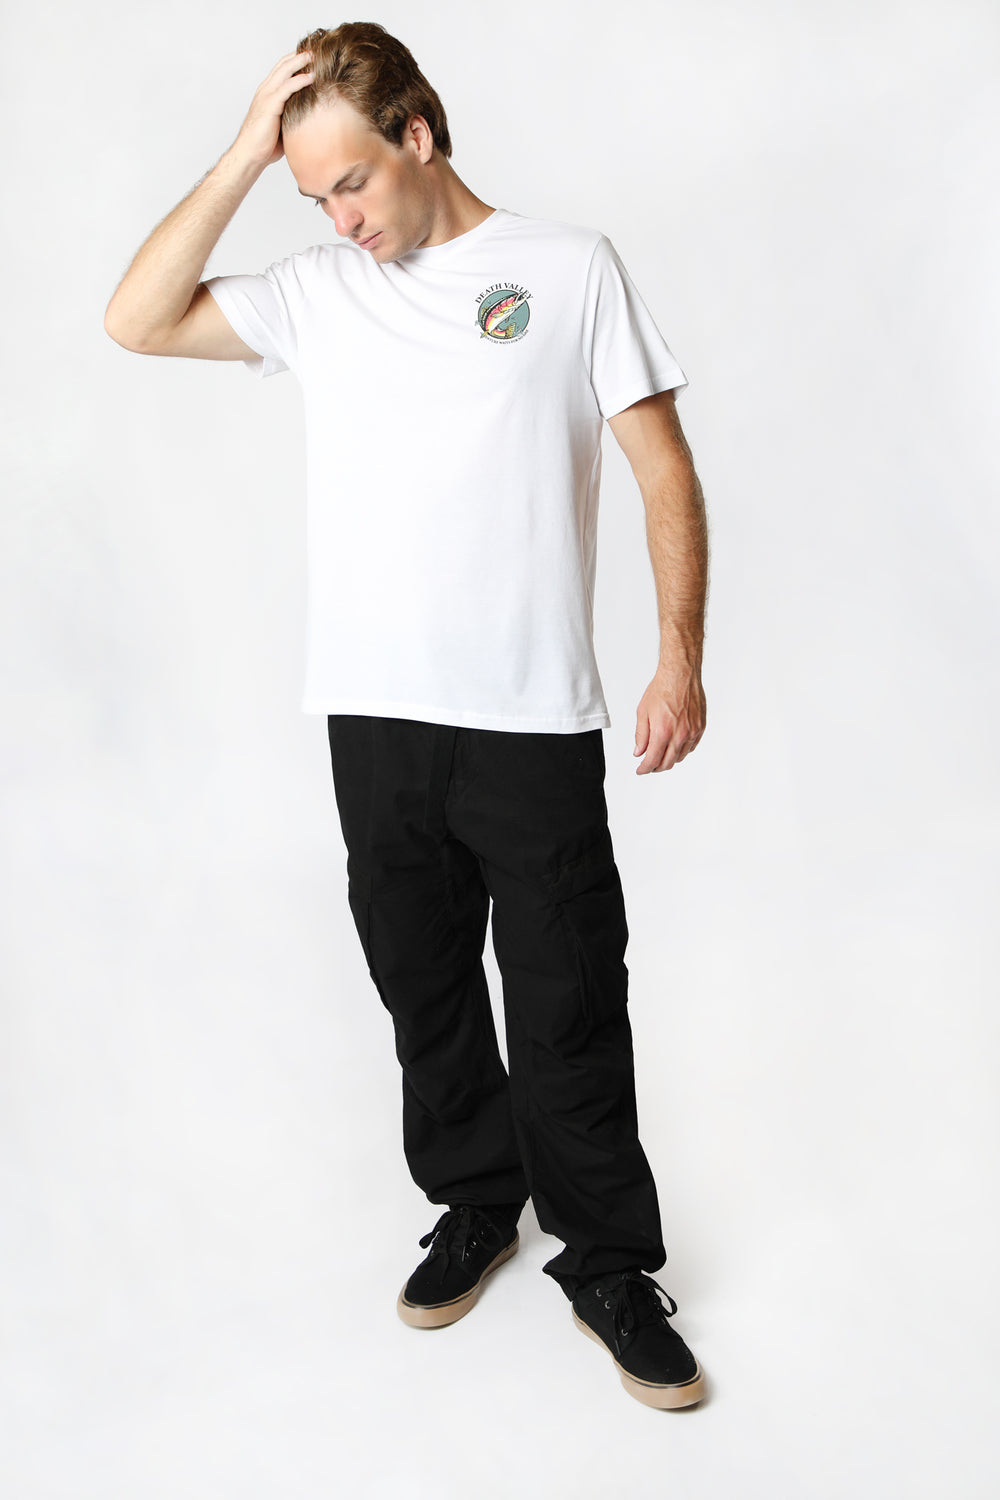 T-Shirt Imprimé Poisson Death Valley Homme Blanc